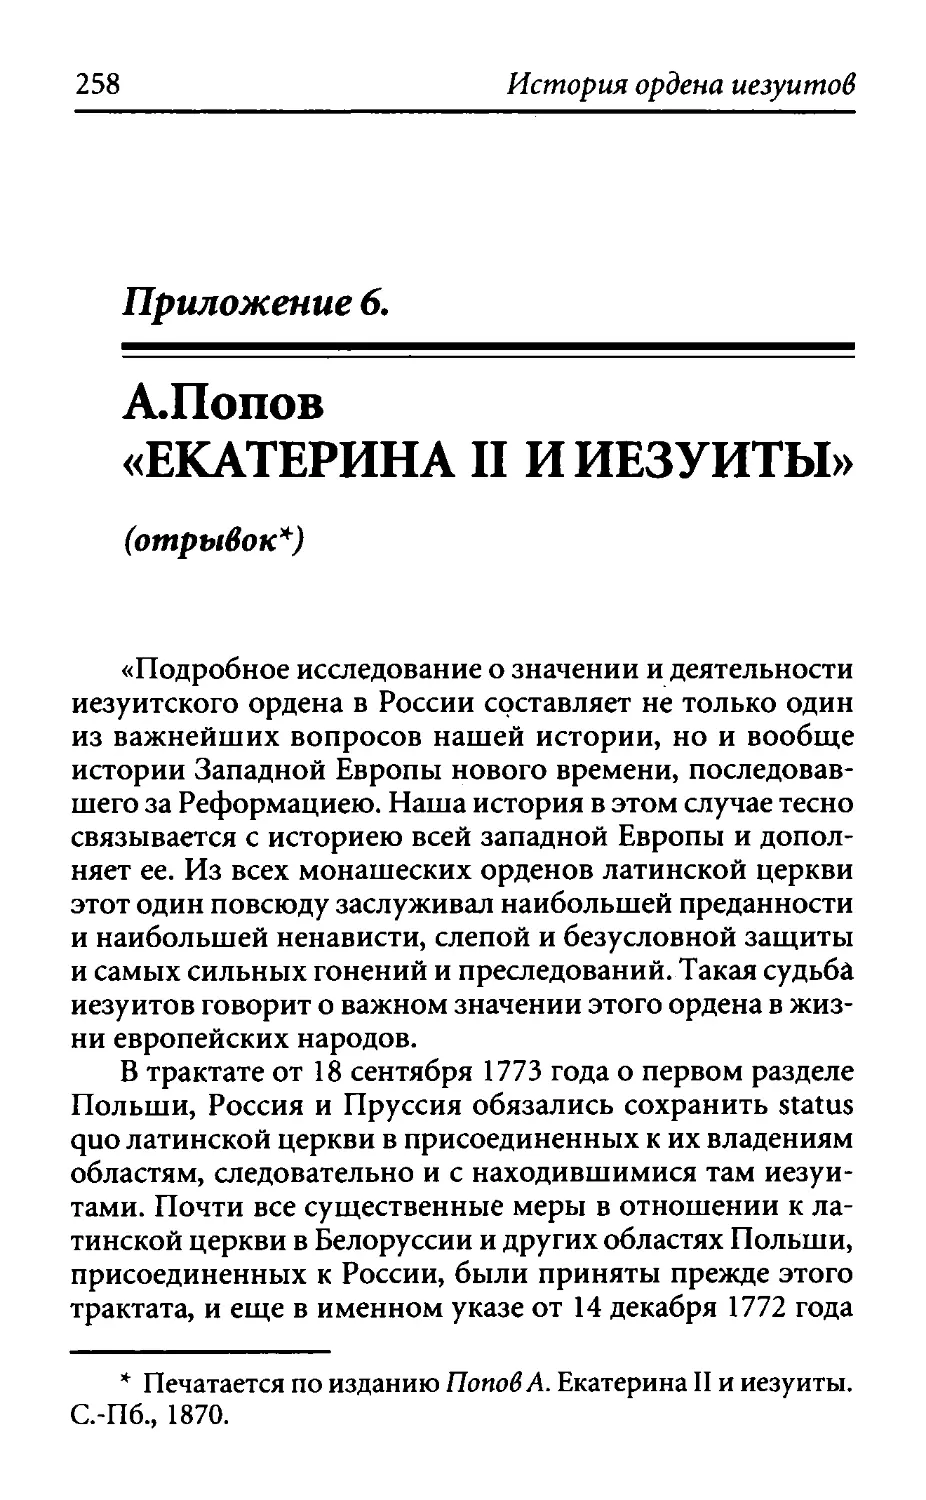 ﻿Приложение 6. А. Попов. Екатерина II и иезуиты øотрывок